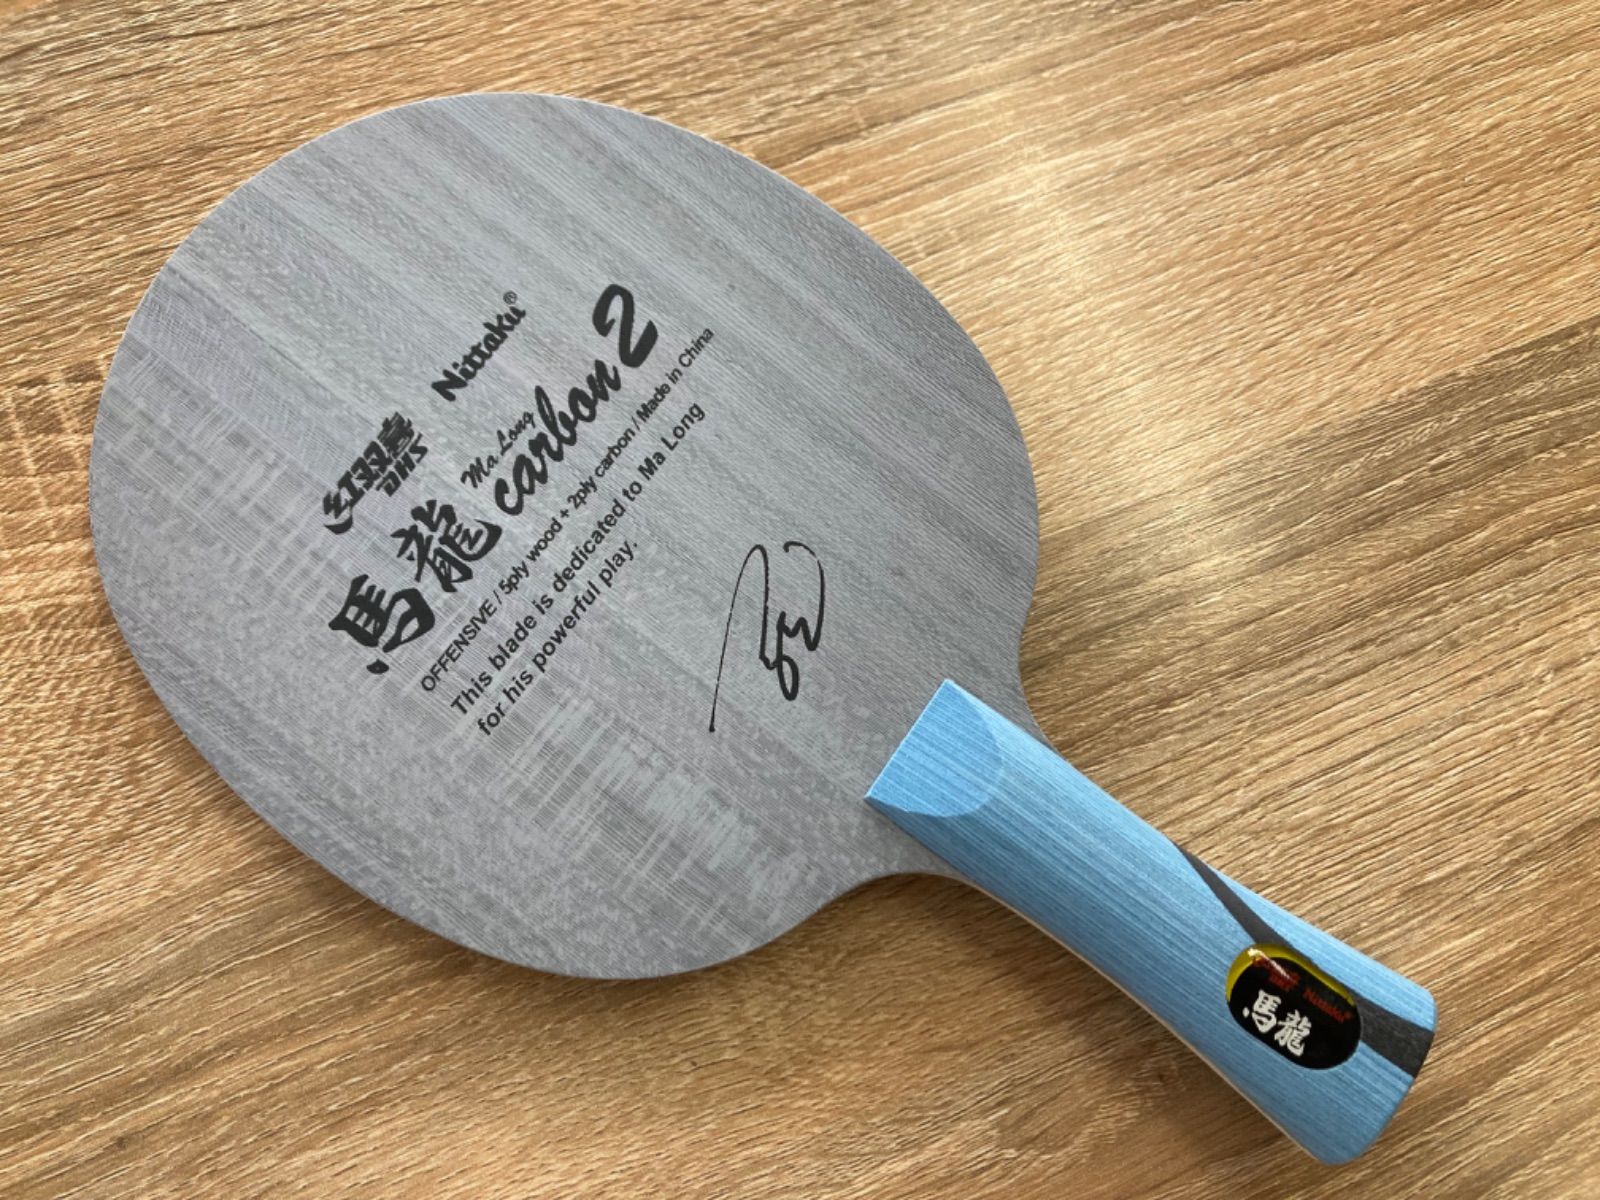 ニッタク 馬龍カーボン2 FL 新品未使用 卓球ラケット - 卓球ショップSK